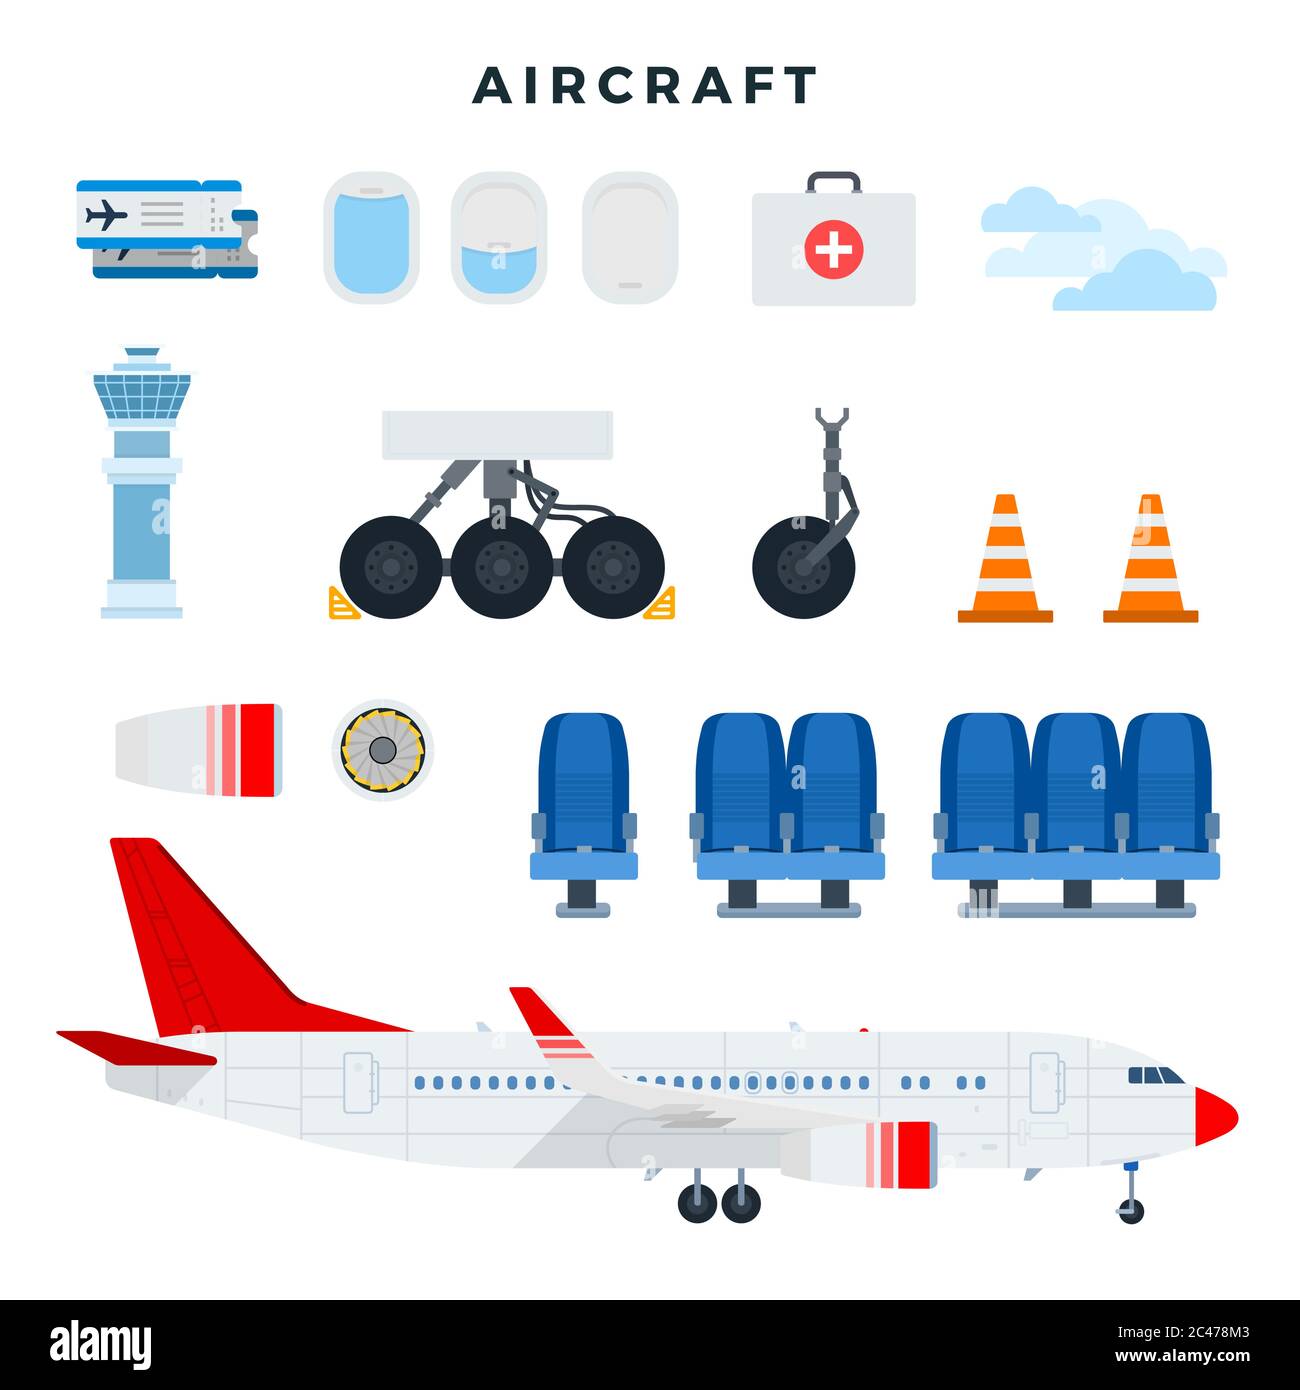 L'avion et ses composants. Ensemble de pièces d'avion, isolées sur fond blanc. Illustration vectorielle Illustration de Vecteur